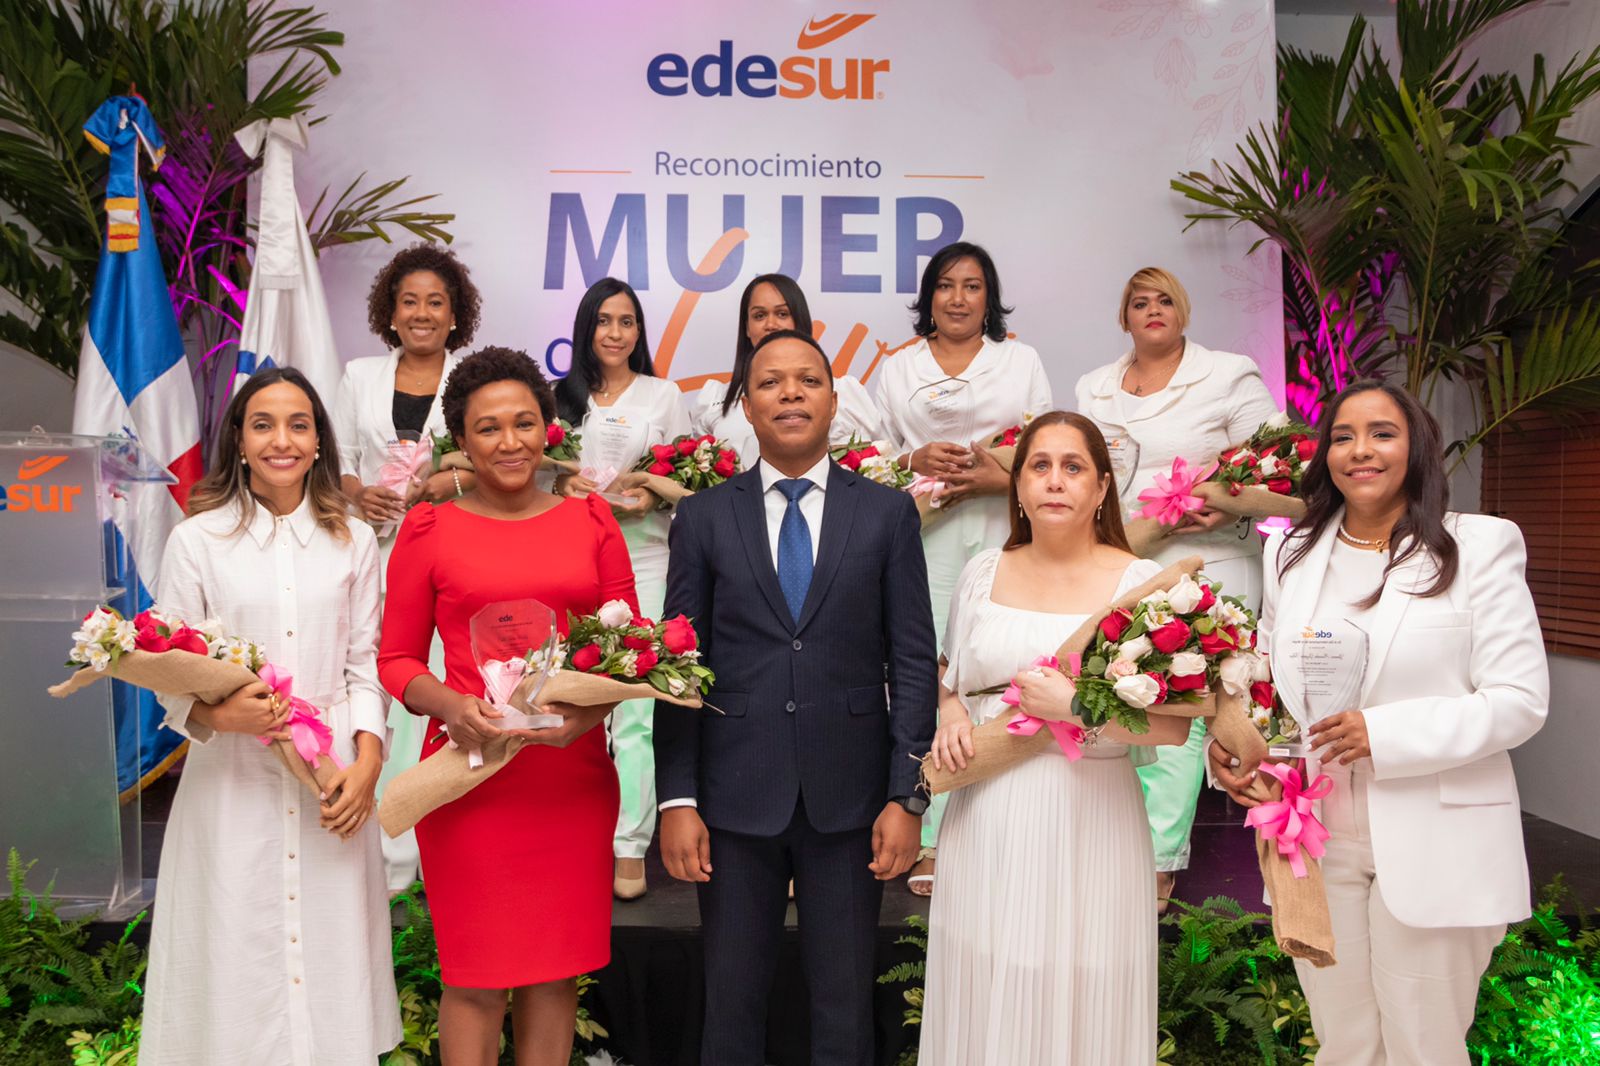 Edesur reconoce a Edith Febles, Marileidy Paulino y otras 8 mujeres